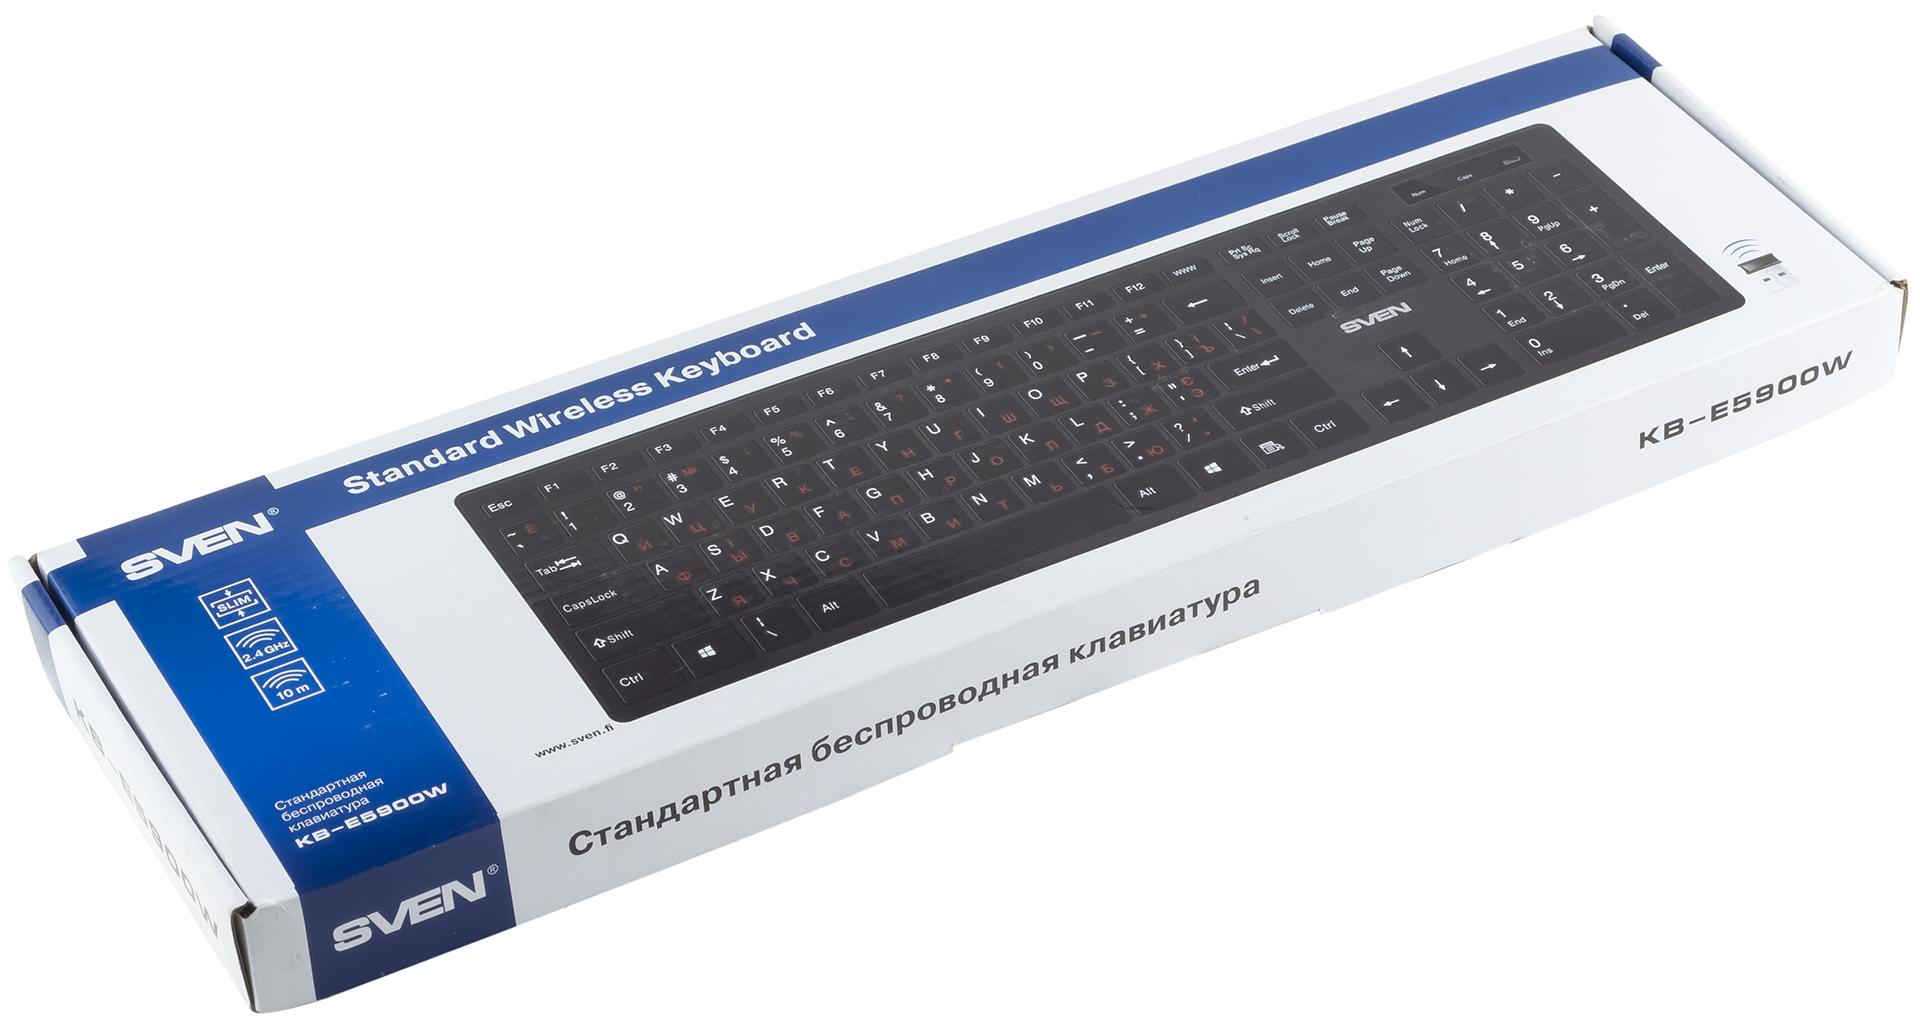 Кабели не нужны: обзор беспроводной клавиатуры SVEN KB-E5900W